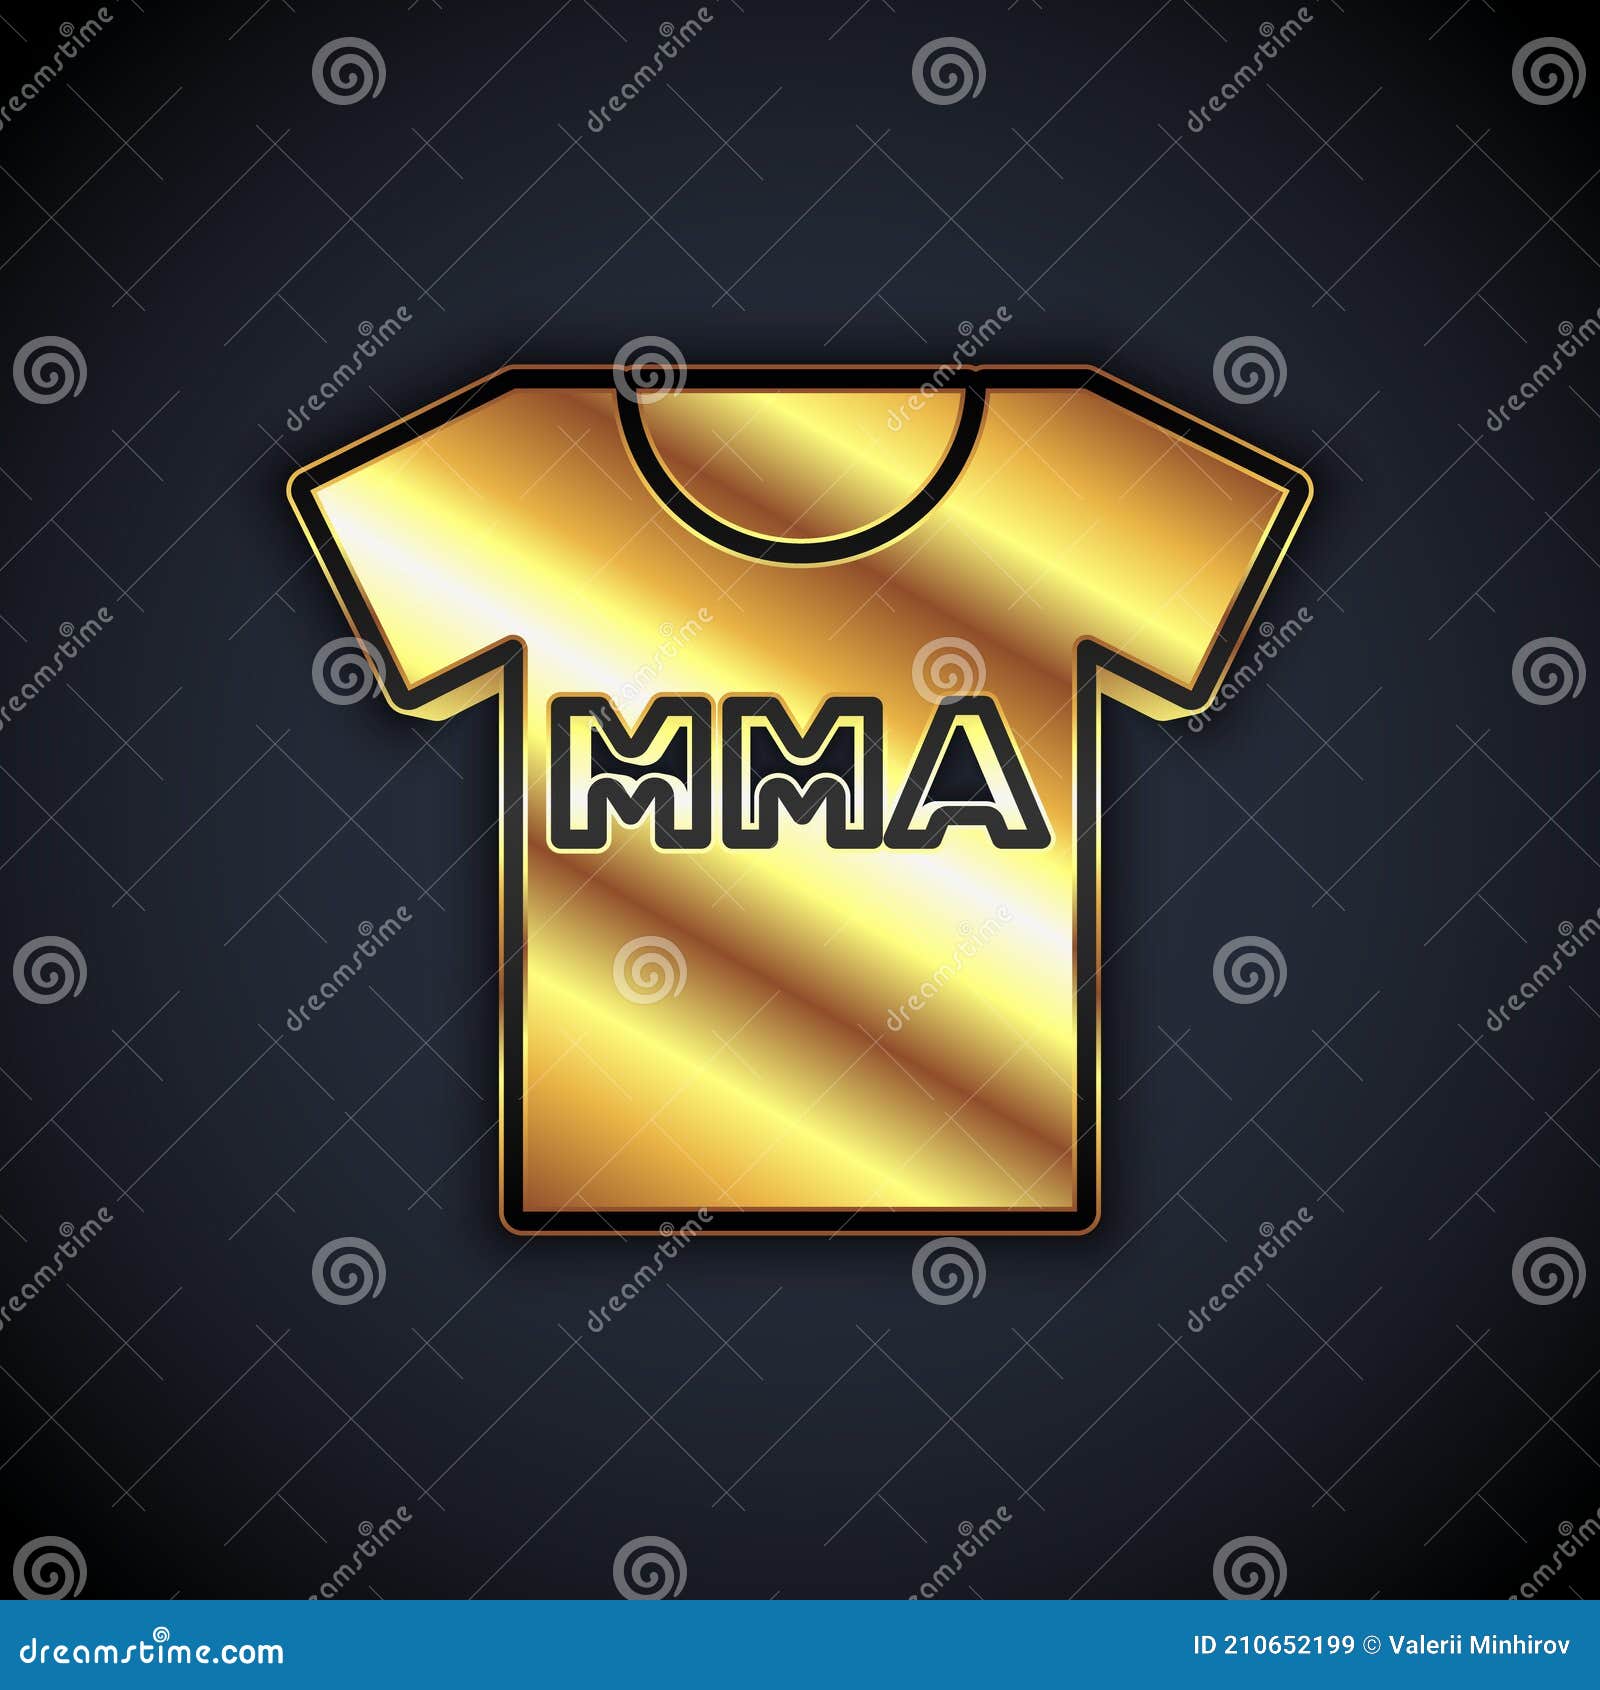  Camiseta MMA, camiseta de artes marciales mixtas